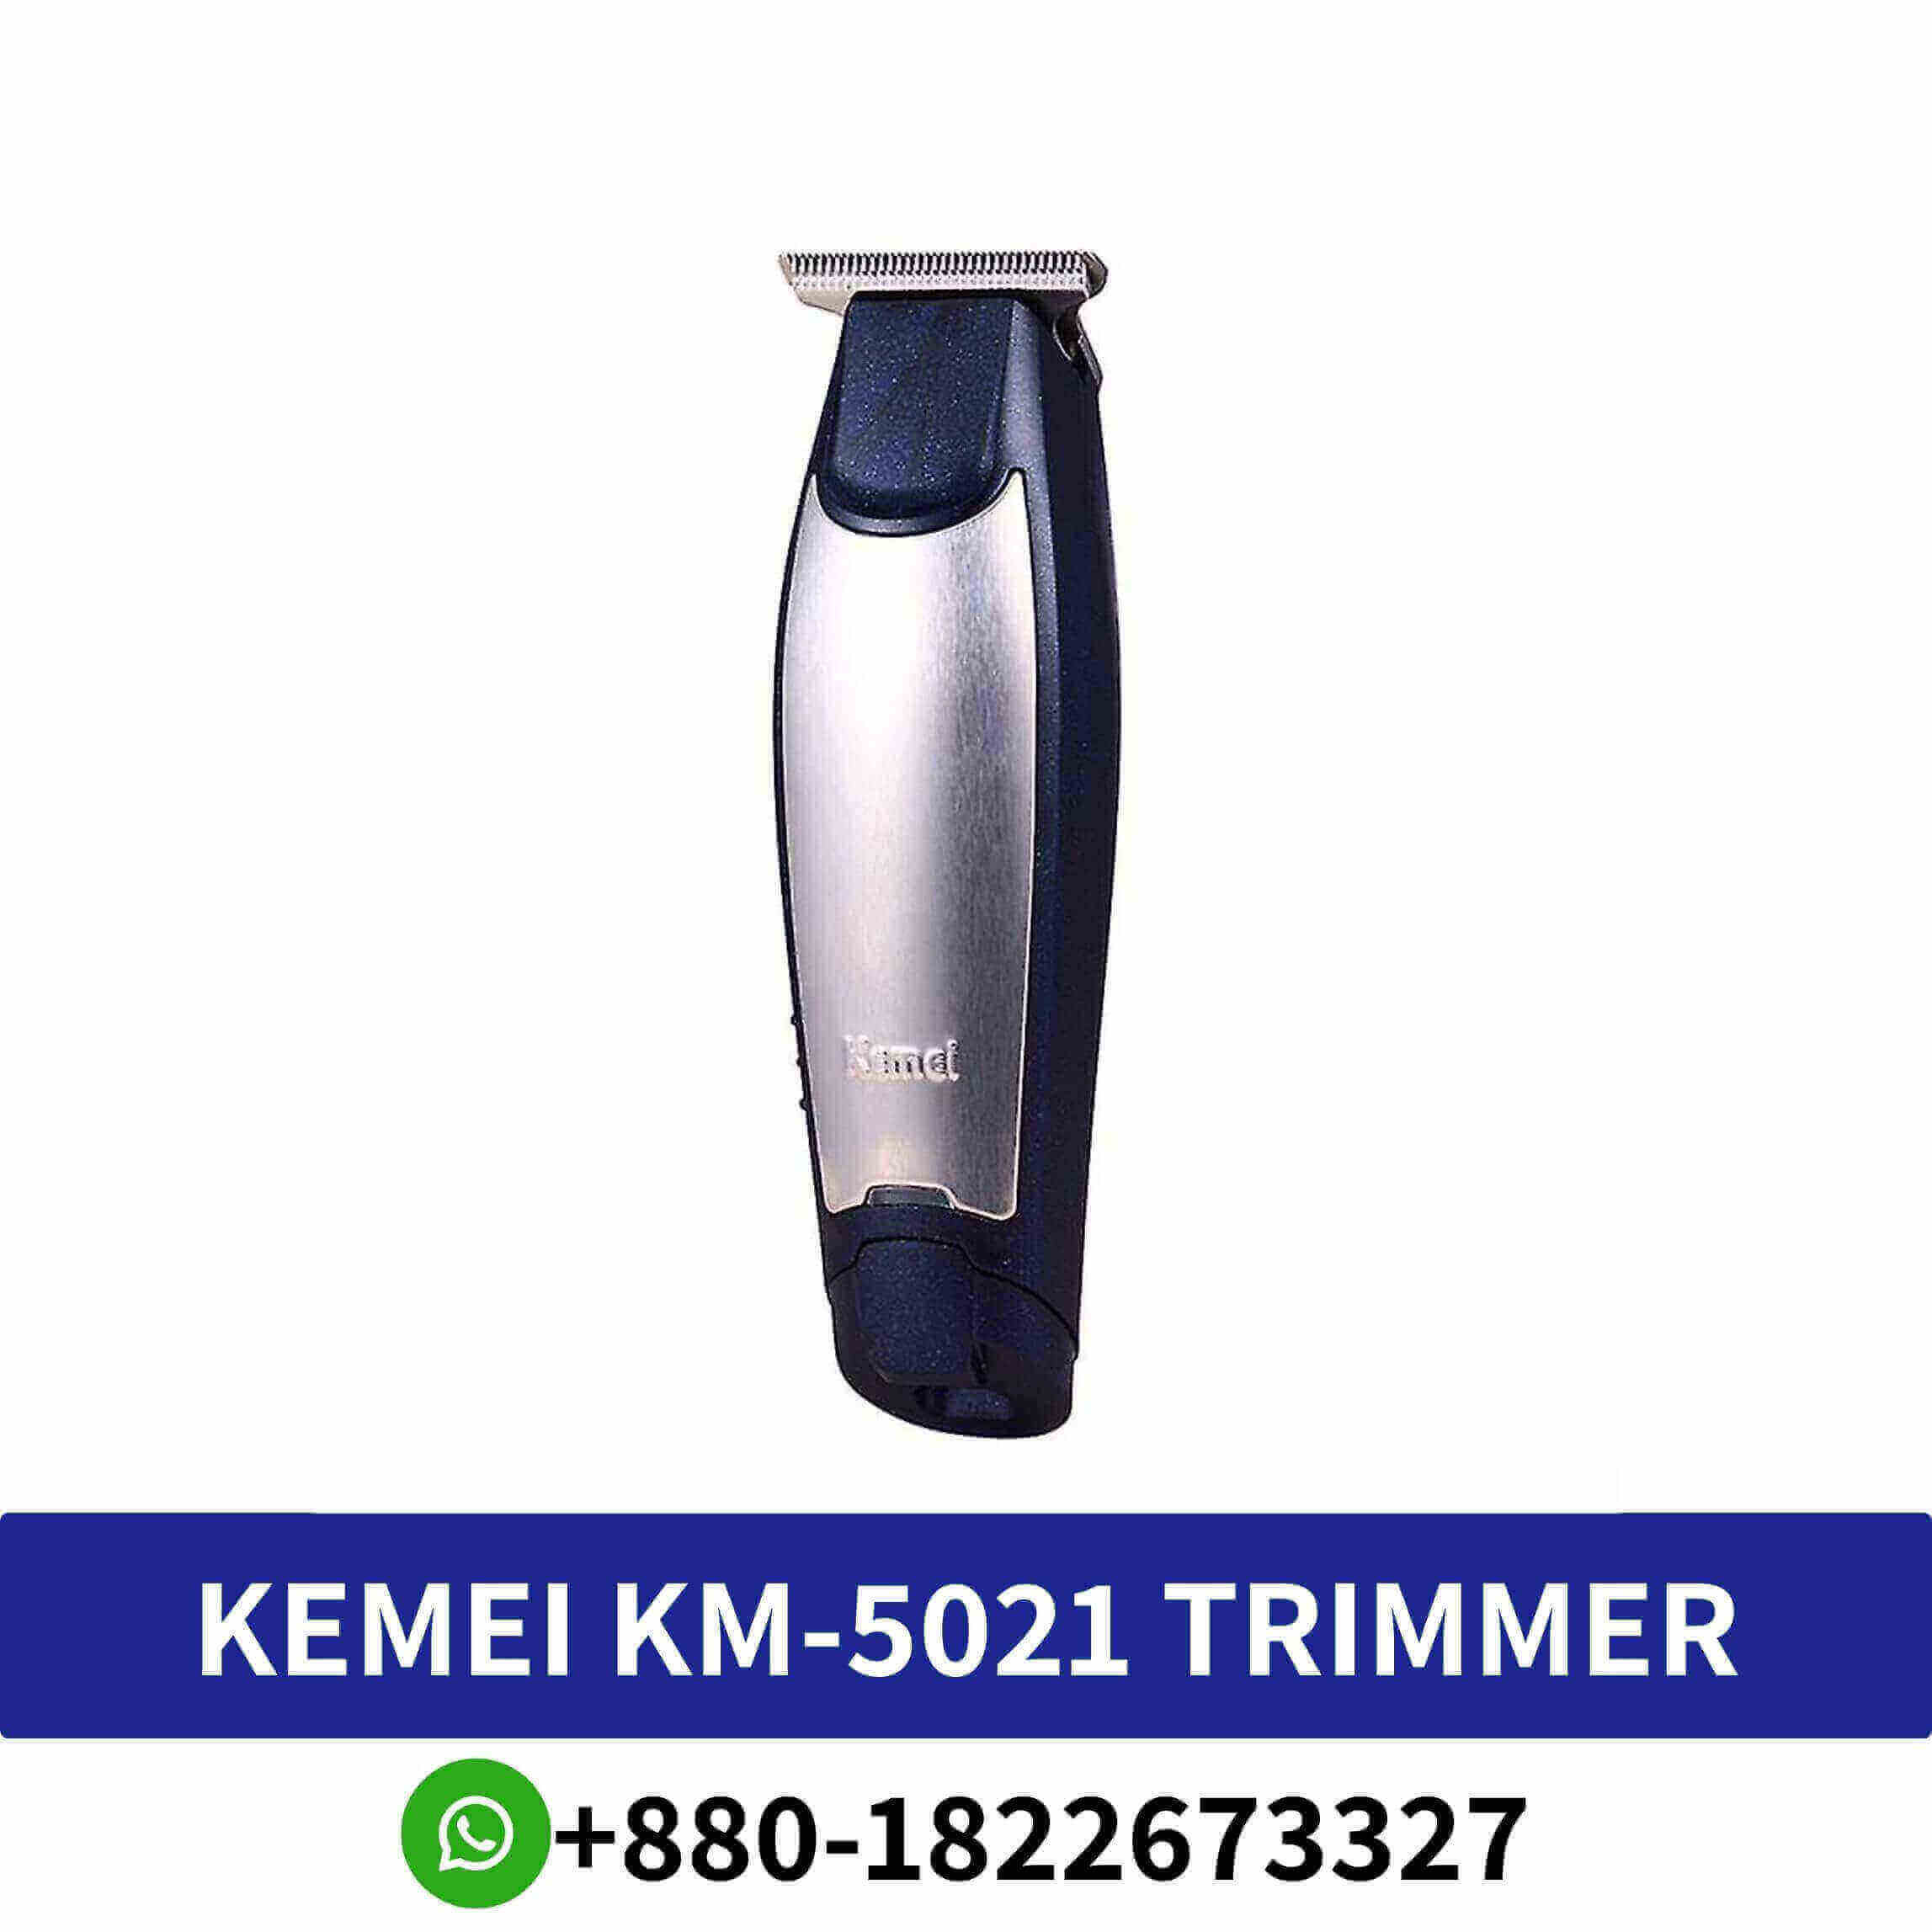 Kemei KM-5021 Trimmer